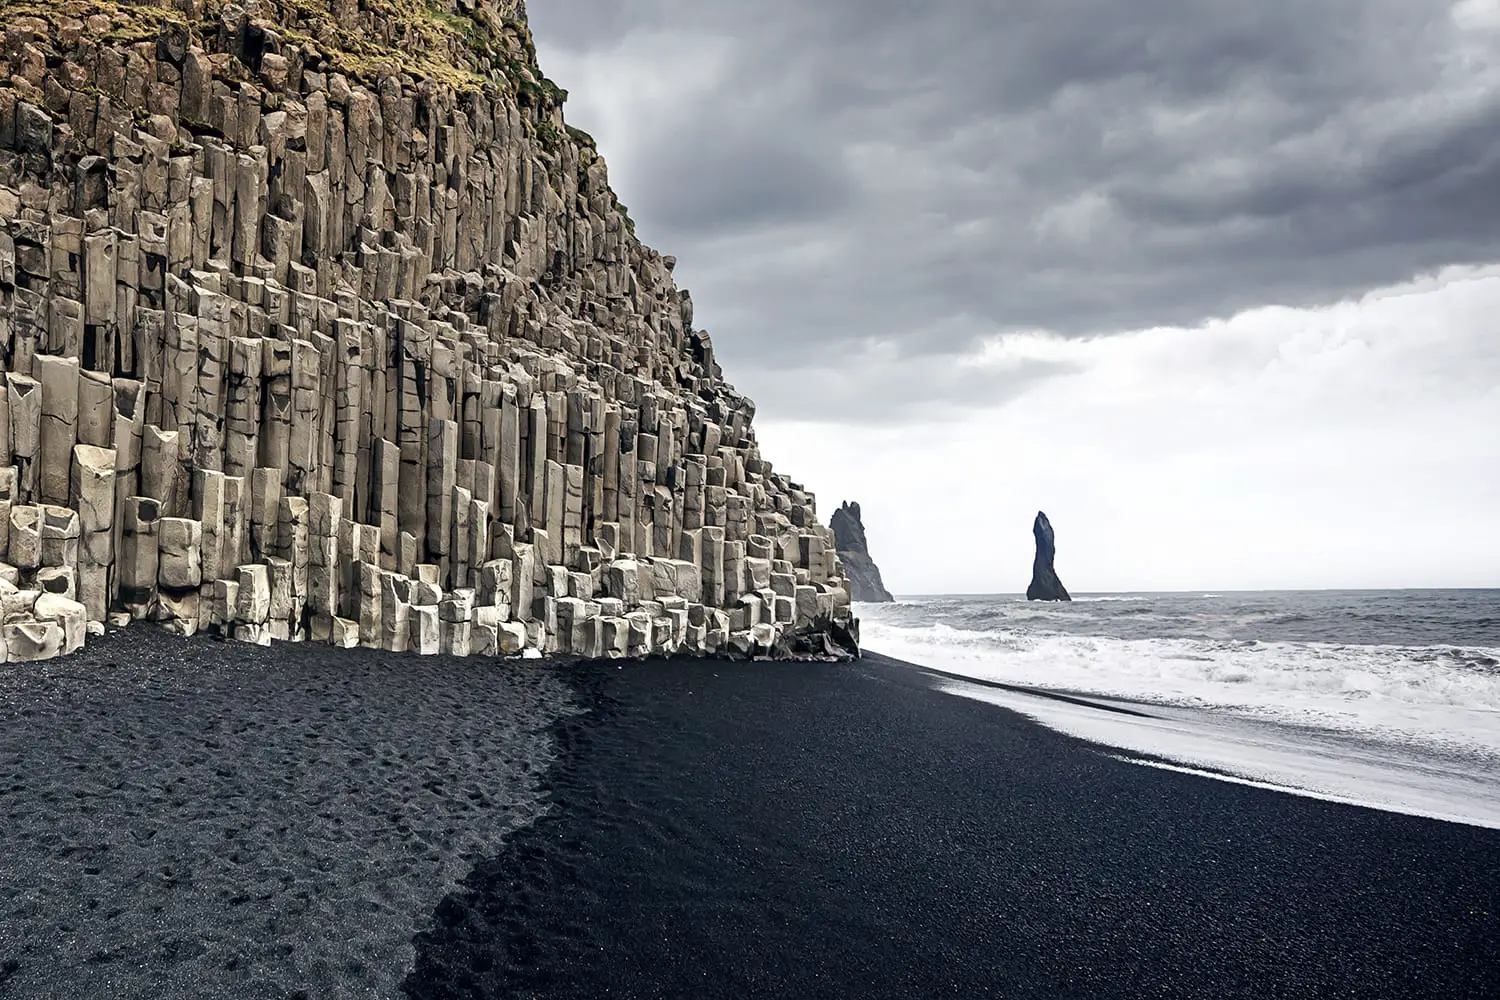 Η παραλία με μαύρη άμμο Reynisfjara και το όρος Reynisfjall από το ακρωτήρι Dyrholaey στη νότια ακτή της Ισλανδίας.